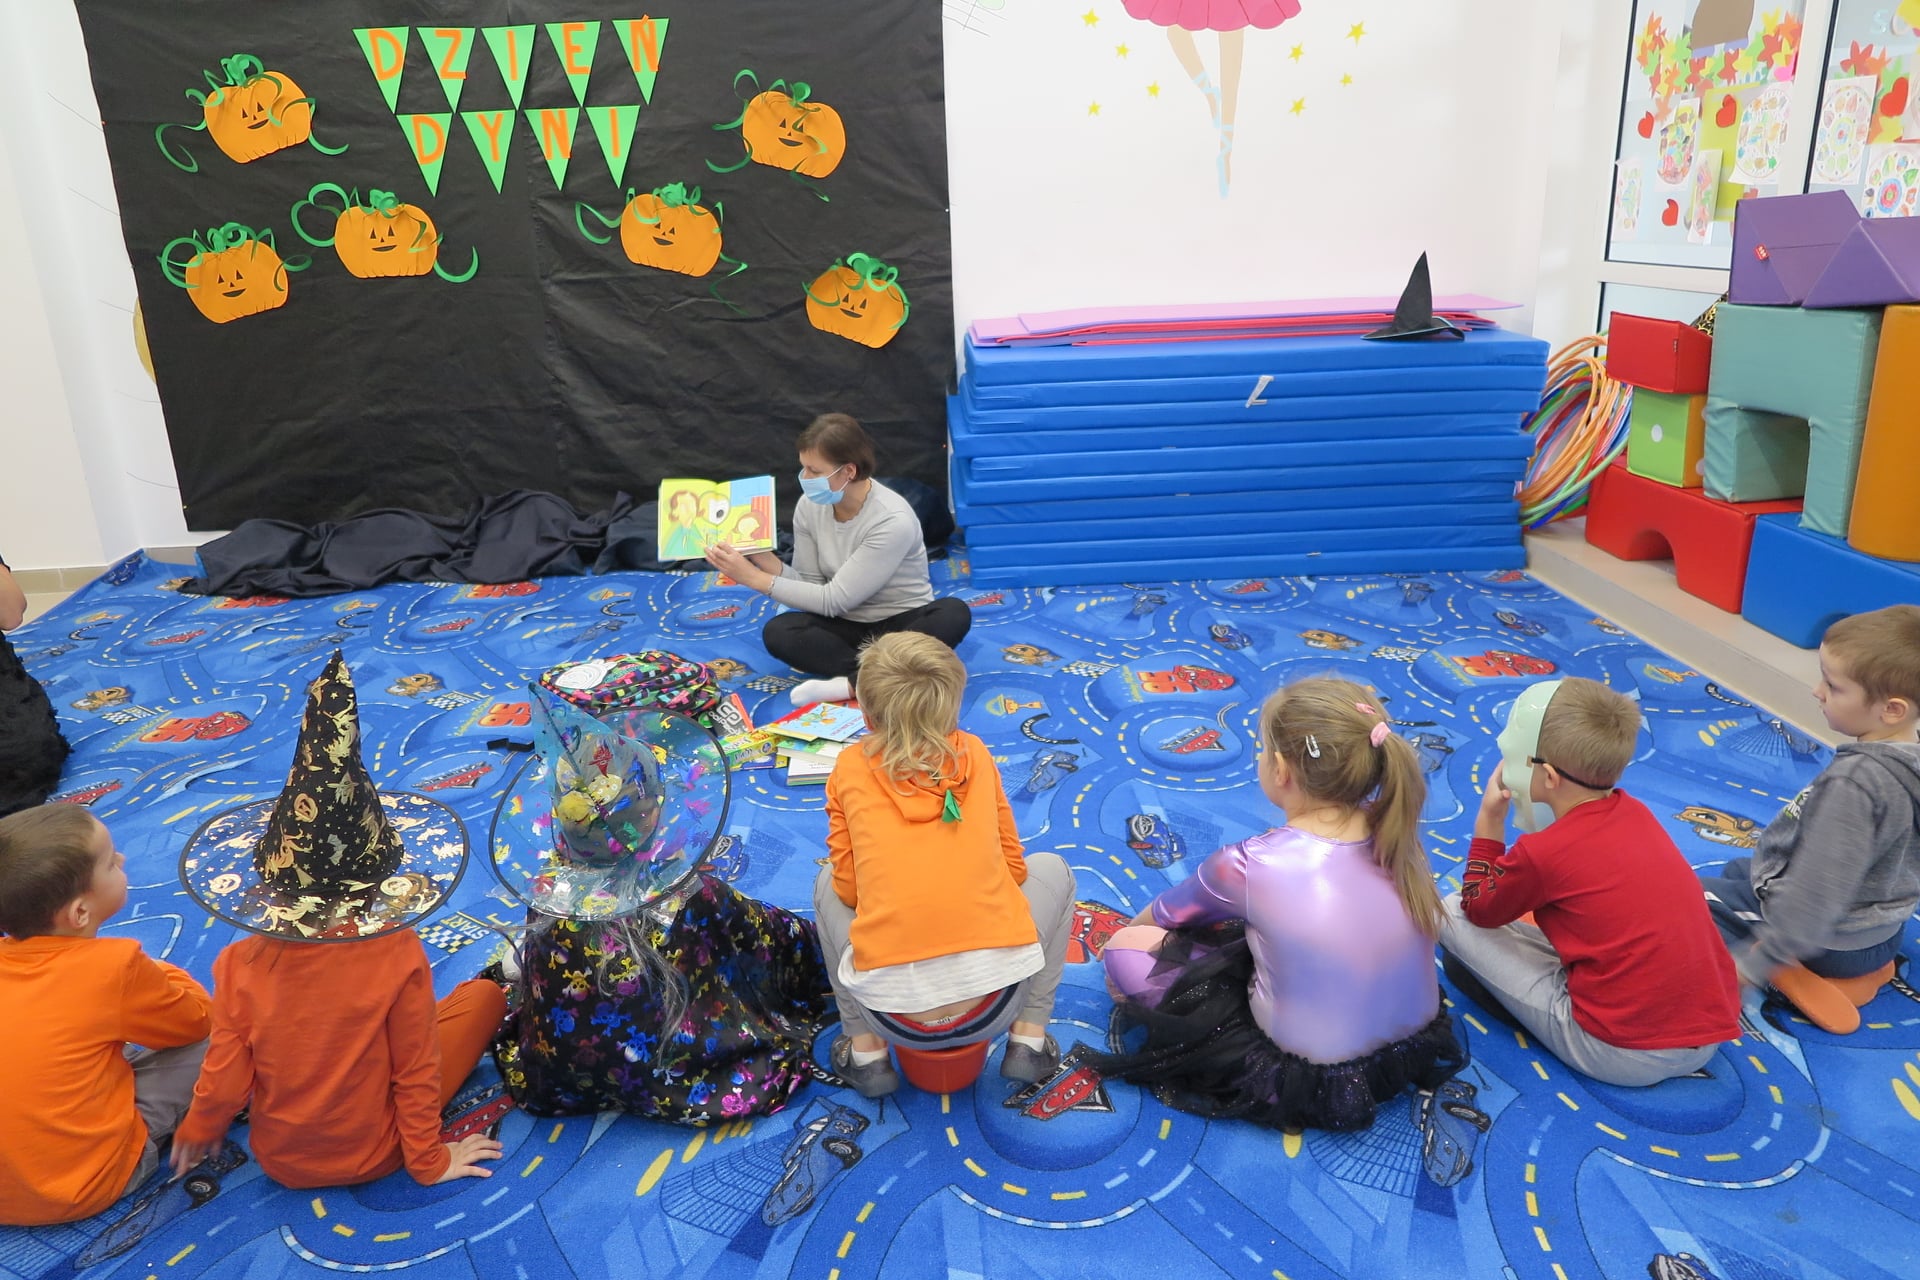 sala przedszkolna udekorowana w klimatach Halloween, 7 dzieci siedzi na dywanie przed bibliotekarką, obok niej leży Biblioplecek z wyłożoną zawartością , niektóre dzieci mają przebrania halloweenowe, w tle widać napis dzień dyni